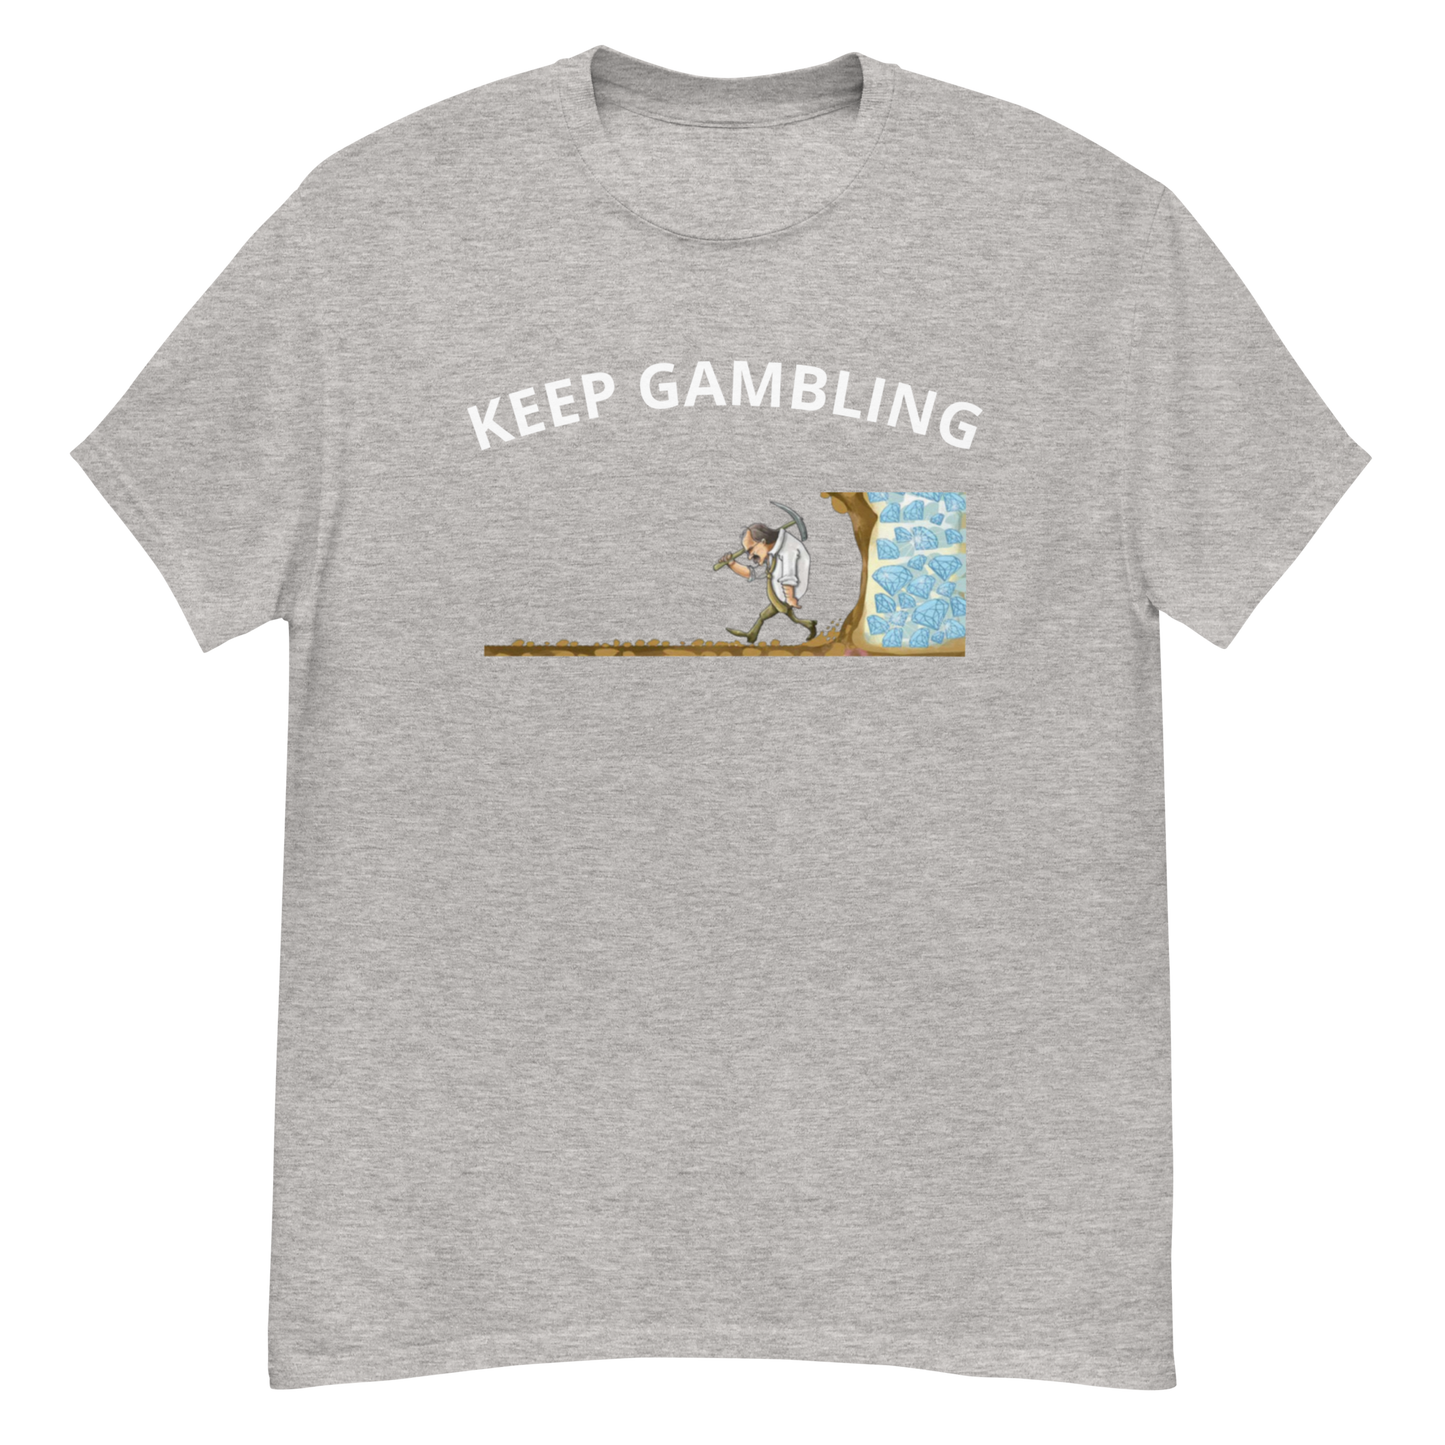 KEEP GAMBLING